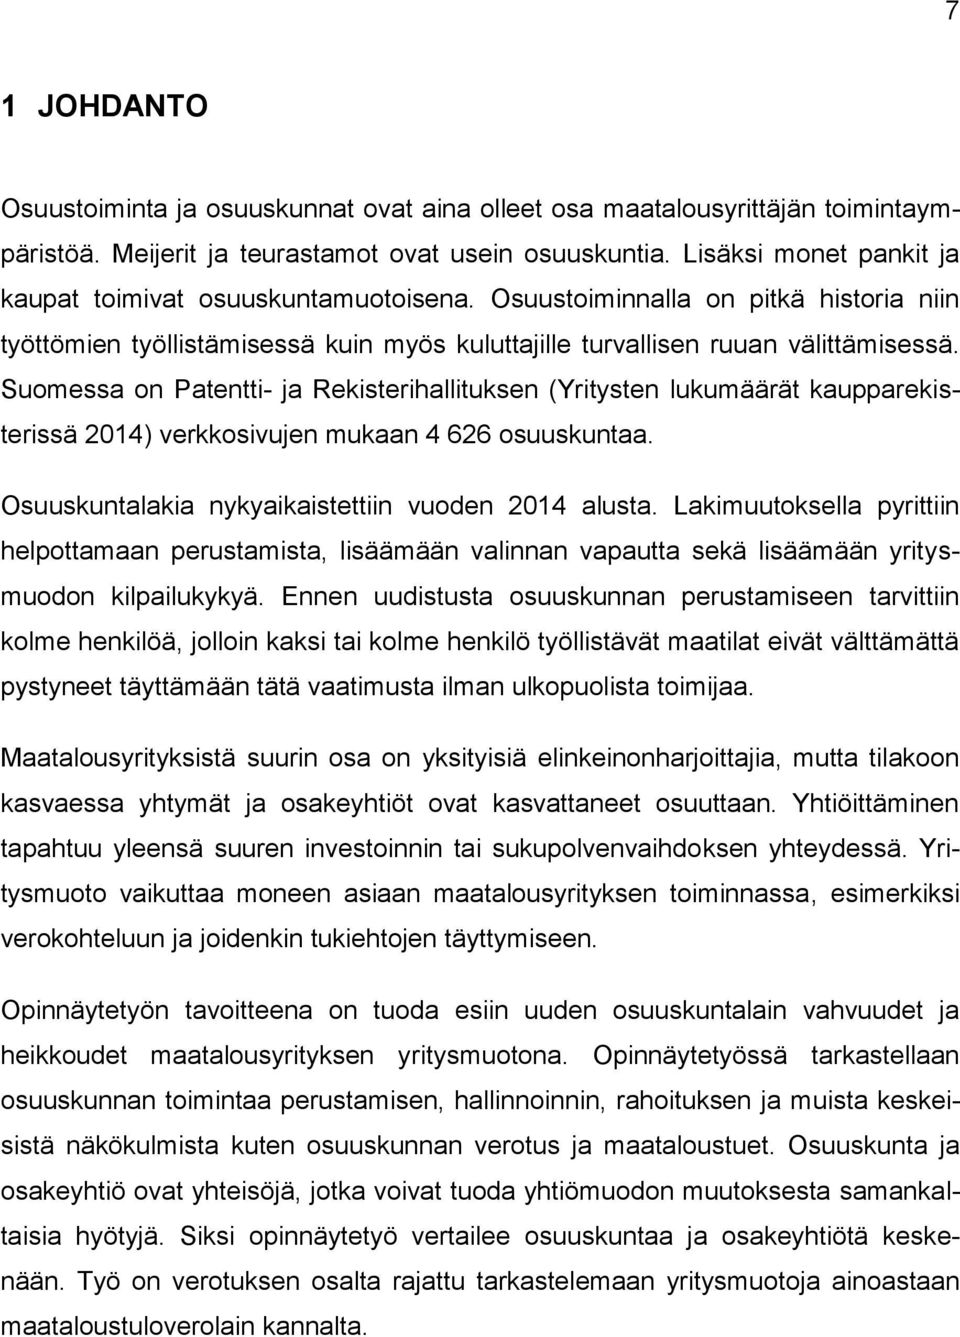 Suomessa on Patentti- ja Rekisterihallituksen (Yritysten lukumäärät kaupparekisterissä 2014) verkkosivujen mukaan 4 626 osuuskuntaa. Osuuskuntalakia nykyaikaistettiin vuoden 2014 alusta.